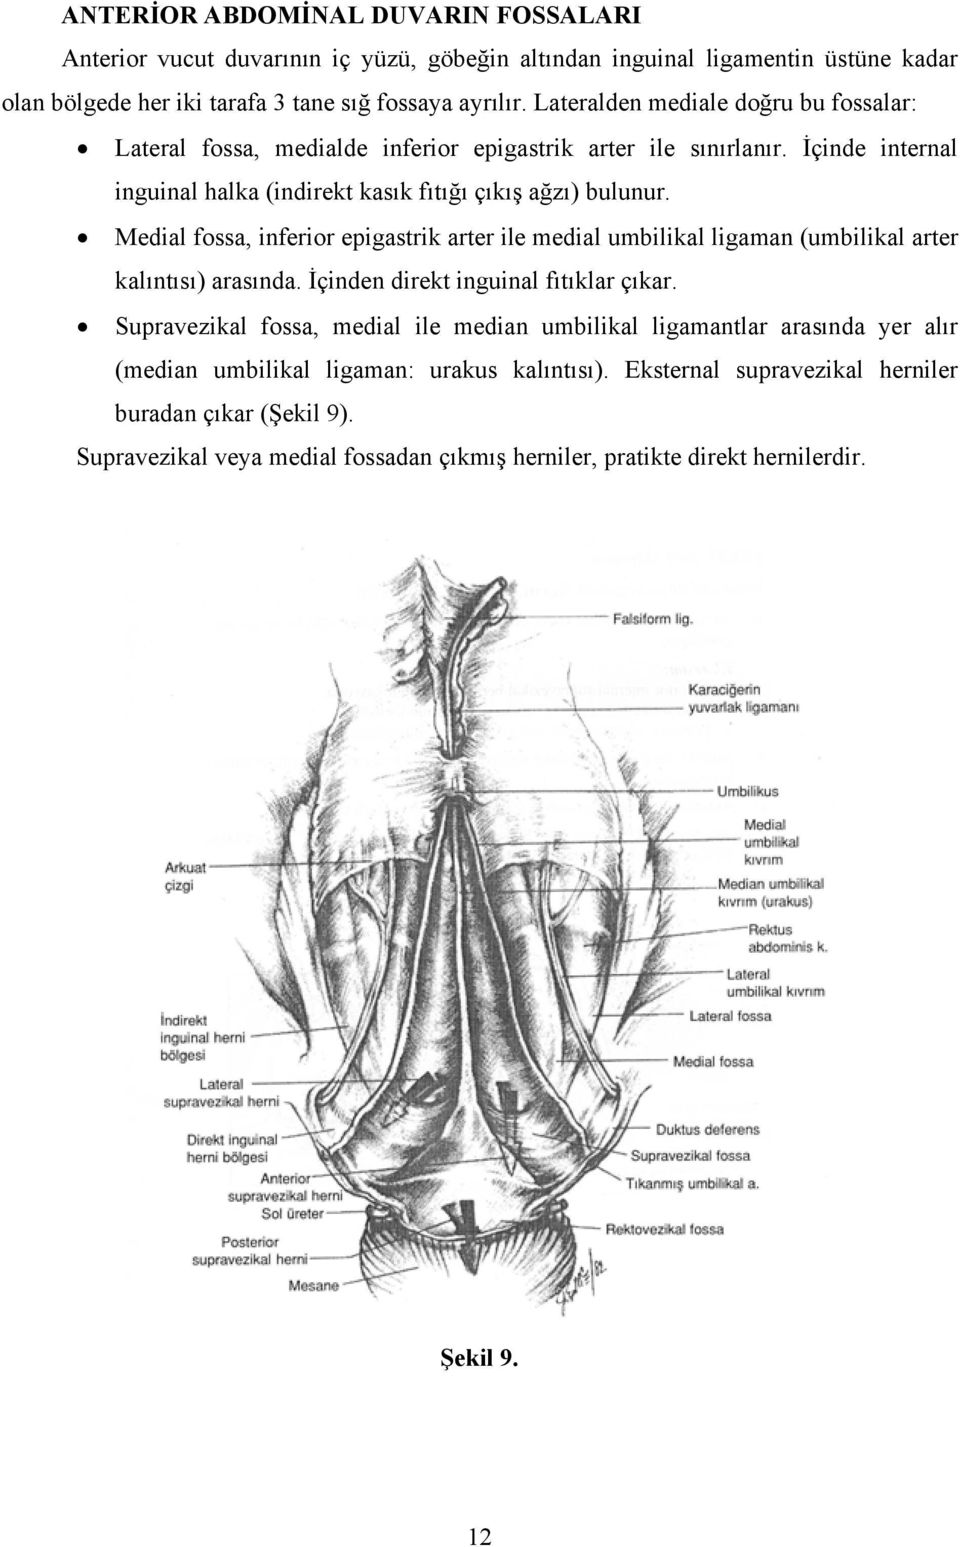 Medial fossa, inferior epigastrik arter ile medial umbilikal ligaman (umbilikal arter kalıntısı) arasında. İçinden direkt inguinal fıtıklar çıkar.